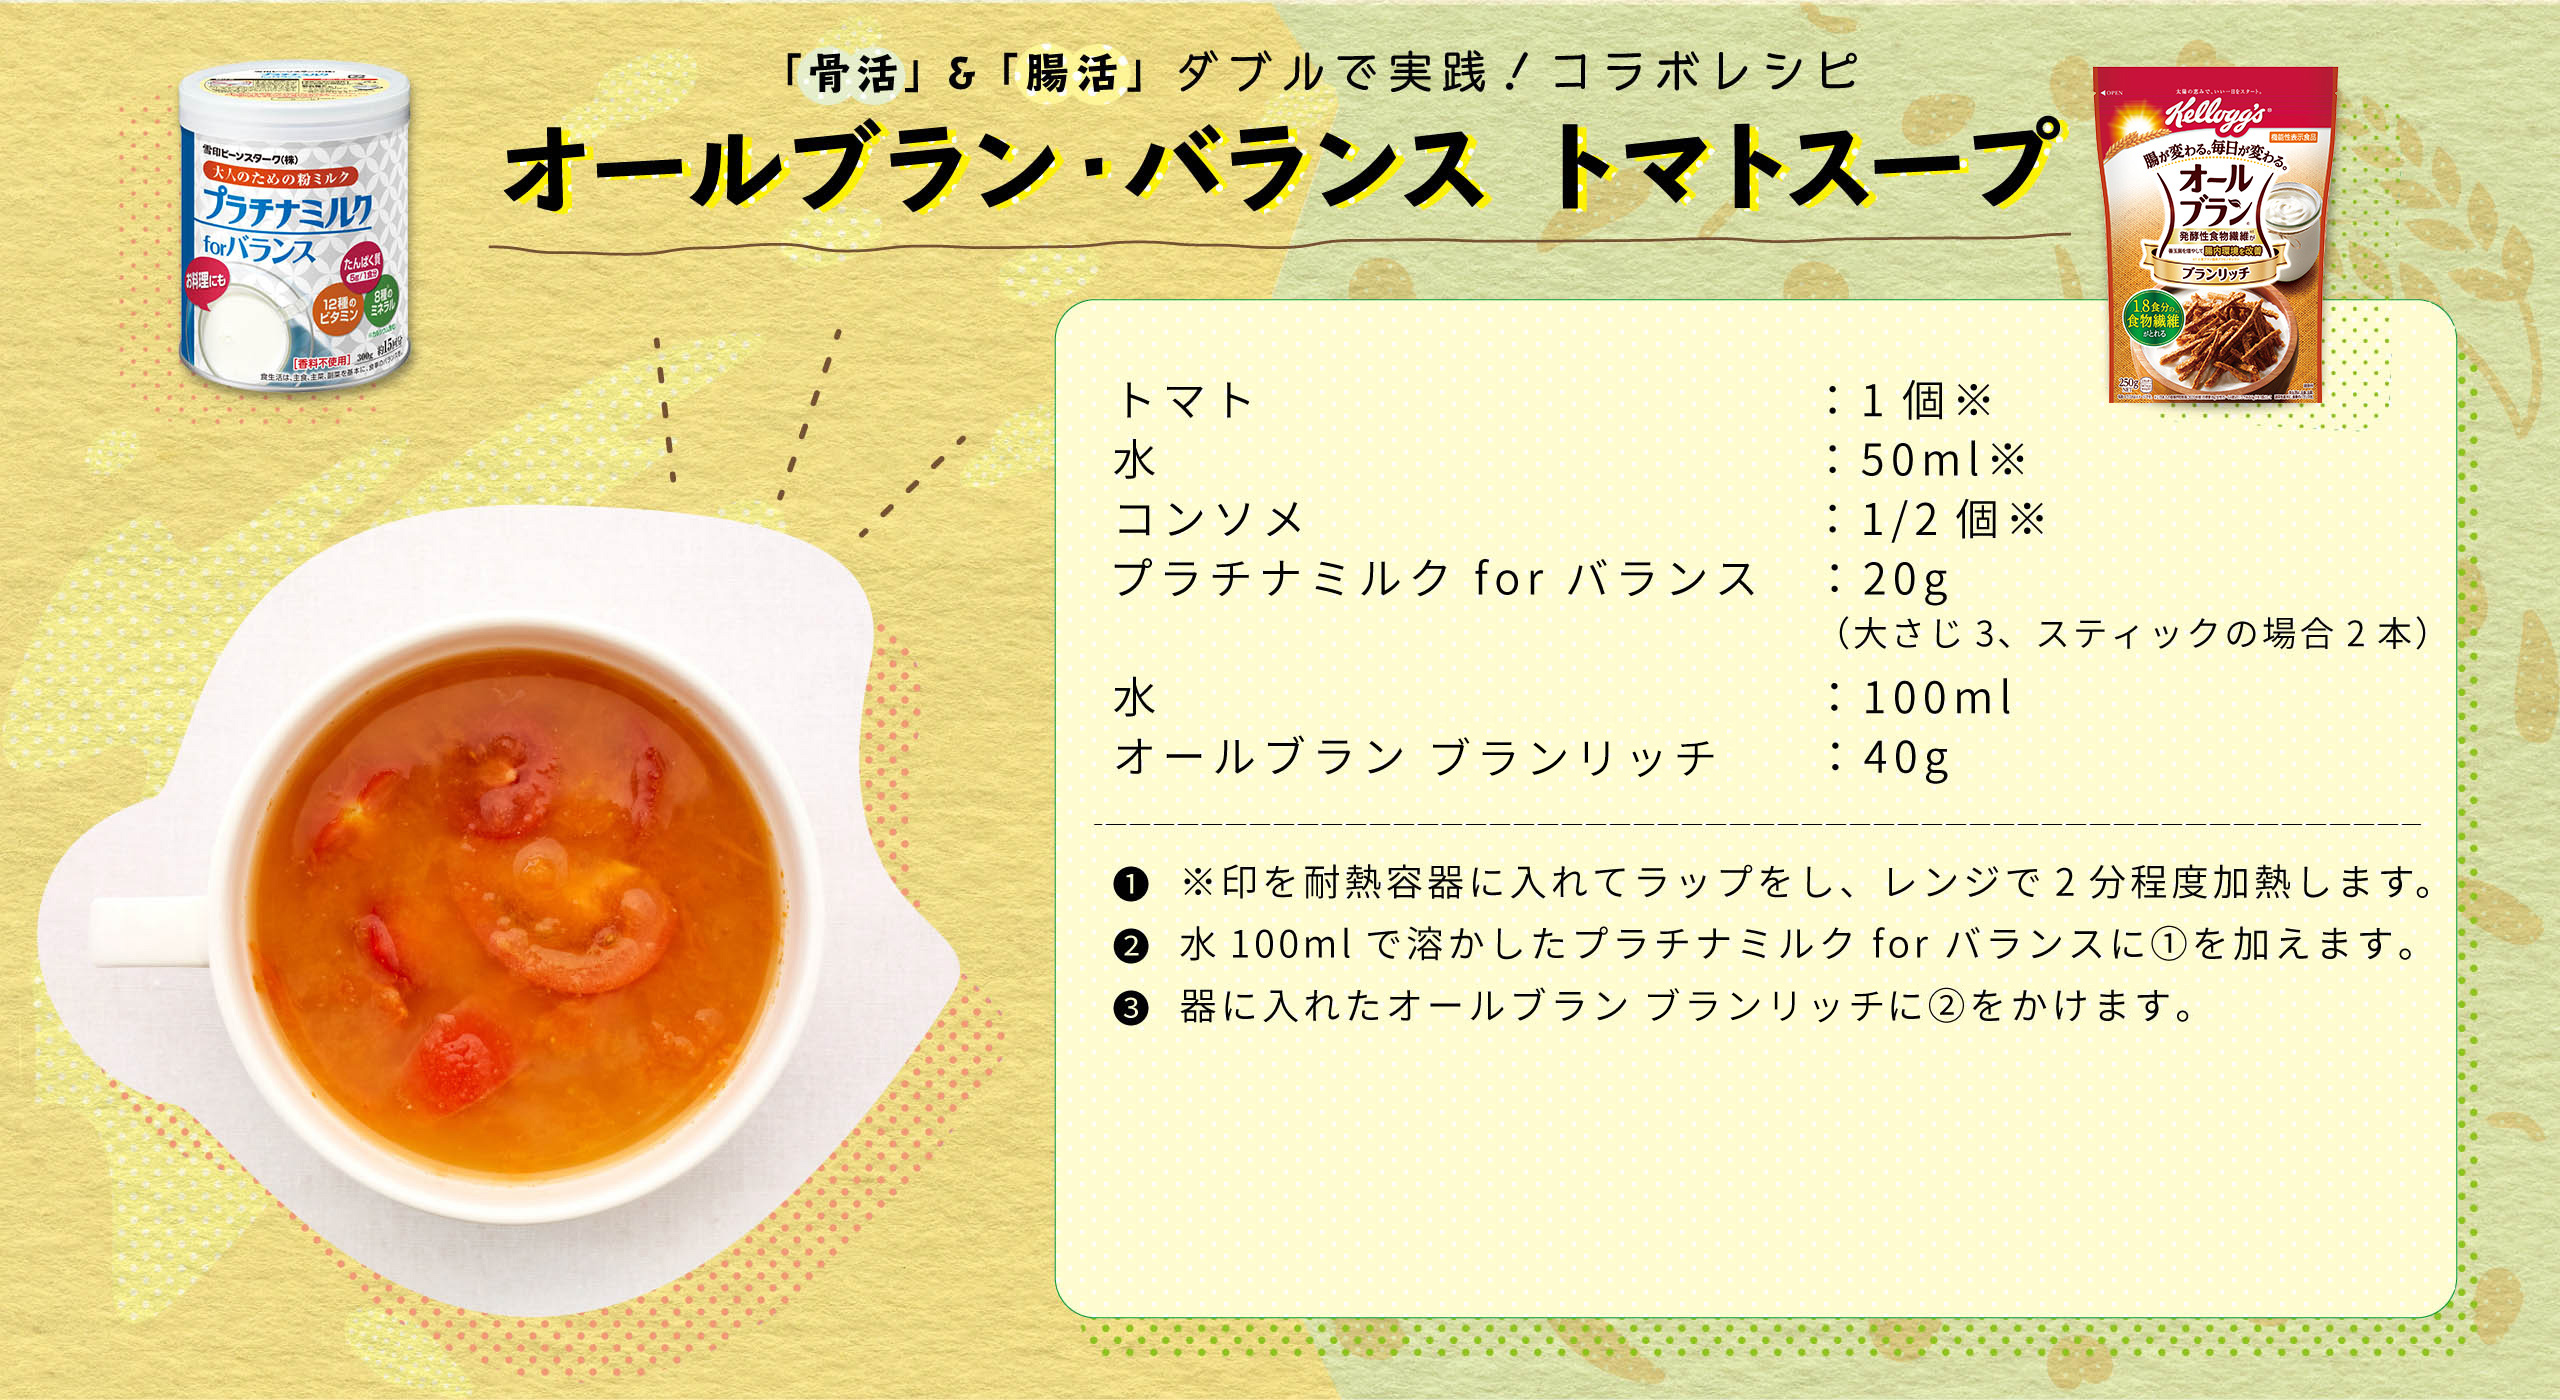 オールブラン・バランストマトスープ